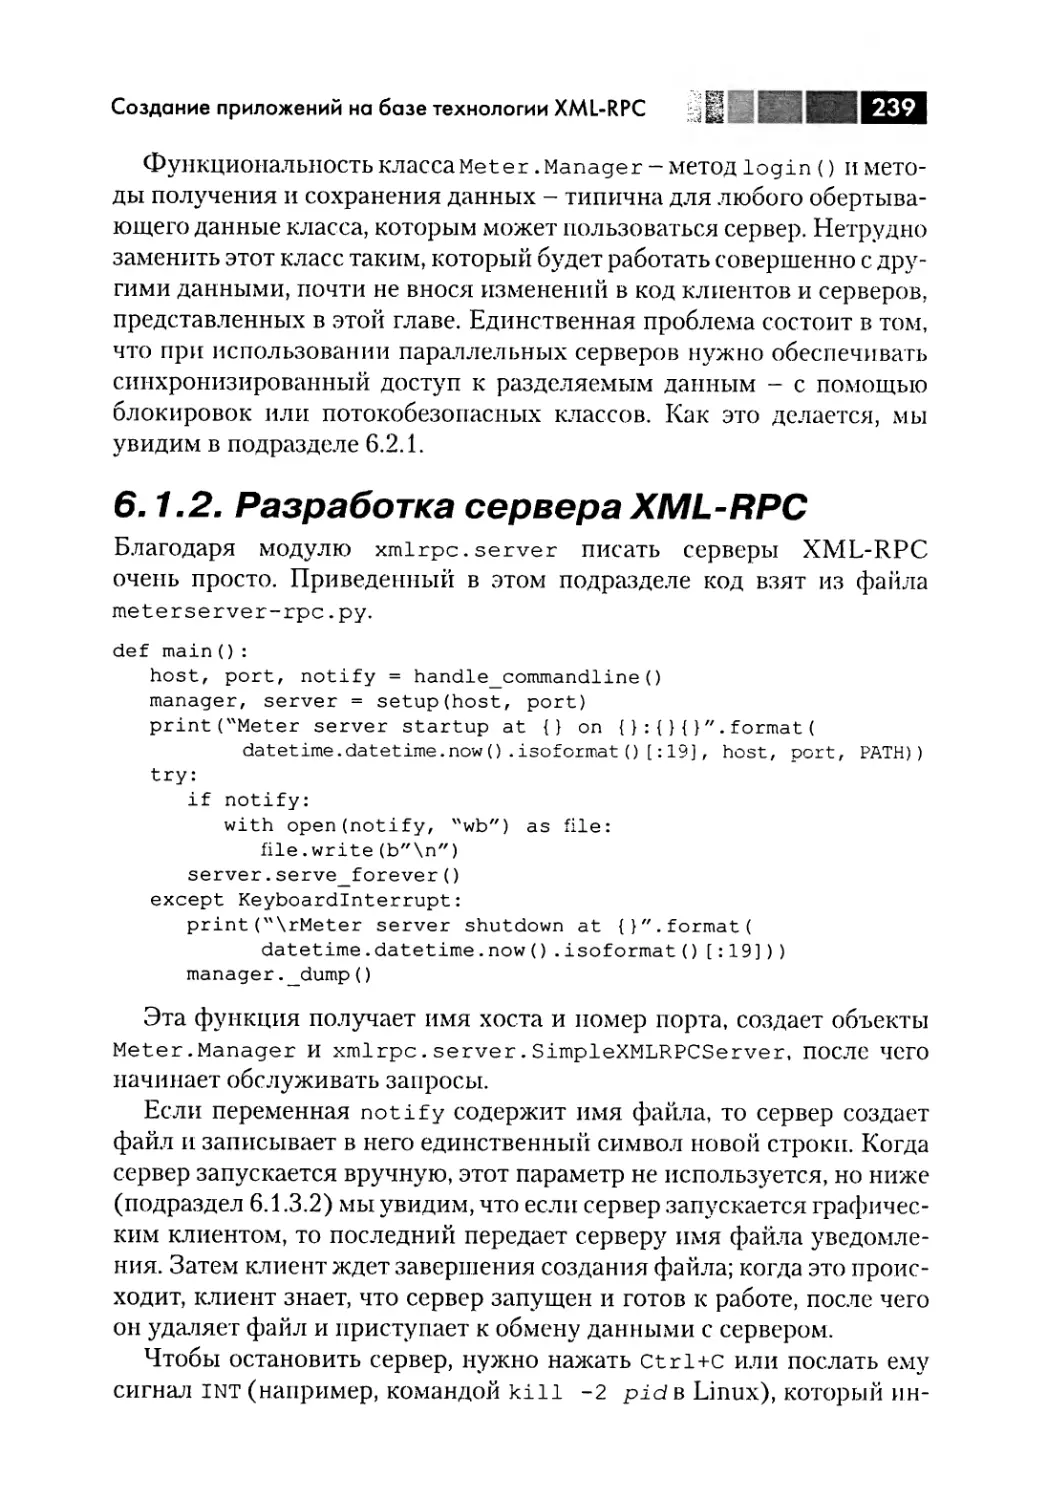 6.1.2. Разработка сервера XML-RPC